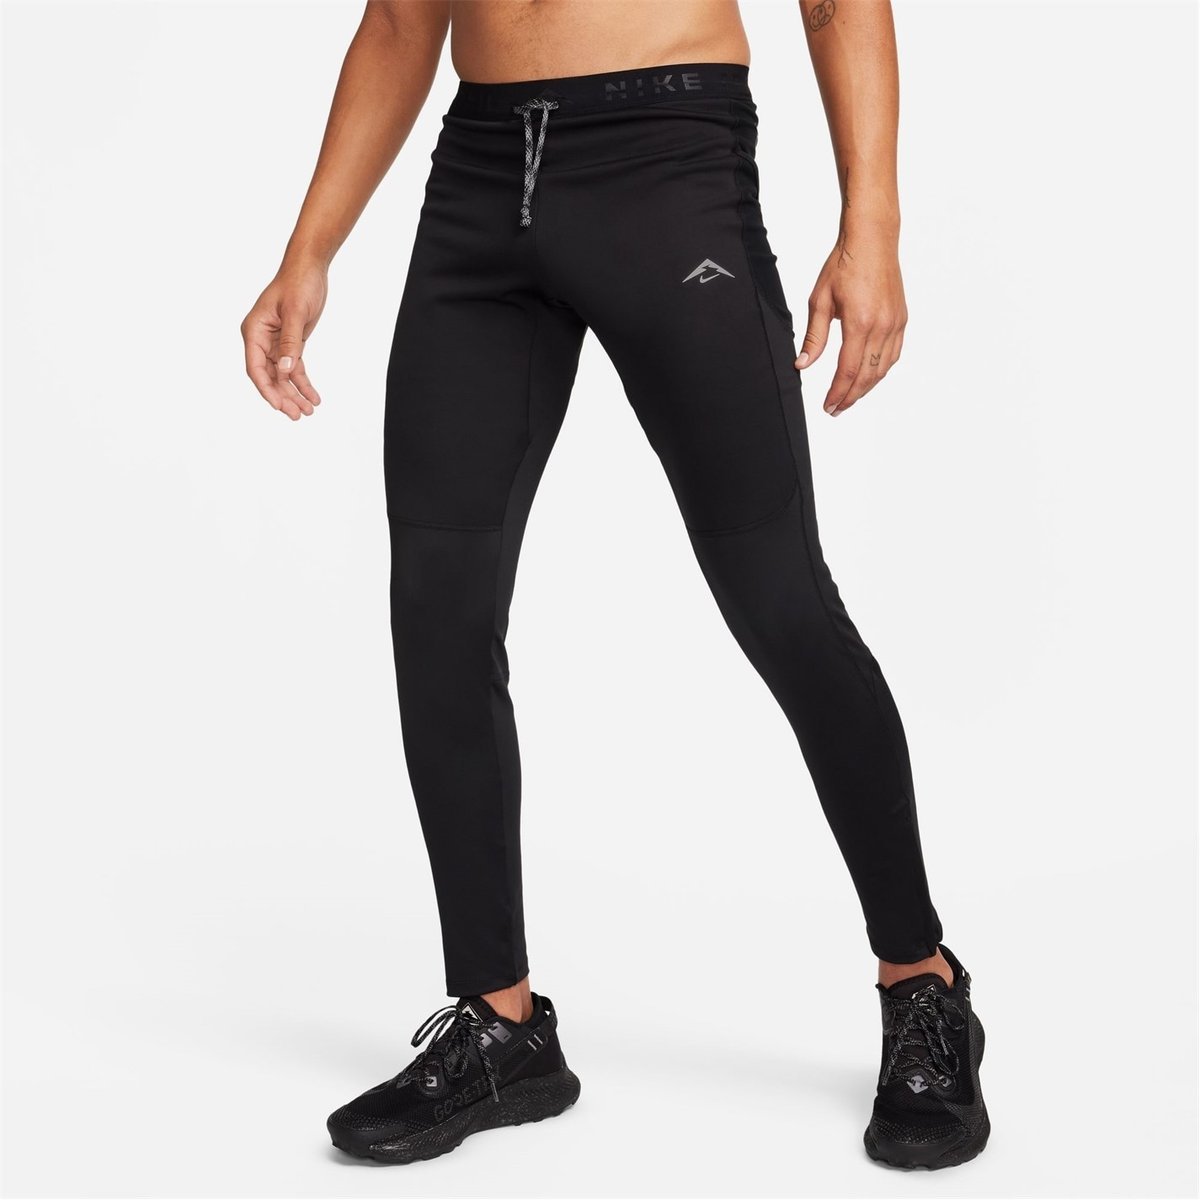 Nike Pro Girl’s Black Compression Spandex Capri Training/Run Tights, Small,  NWT